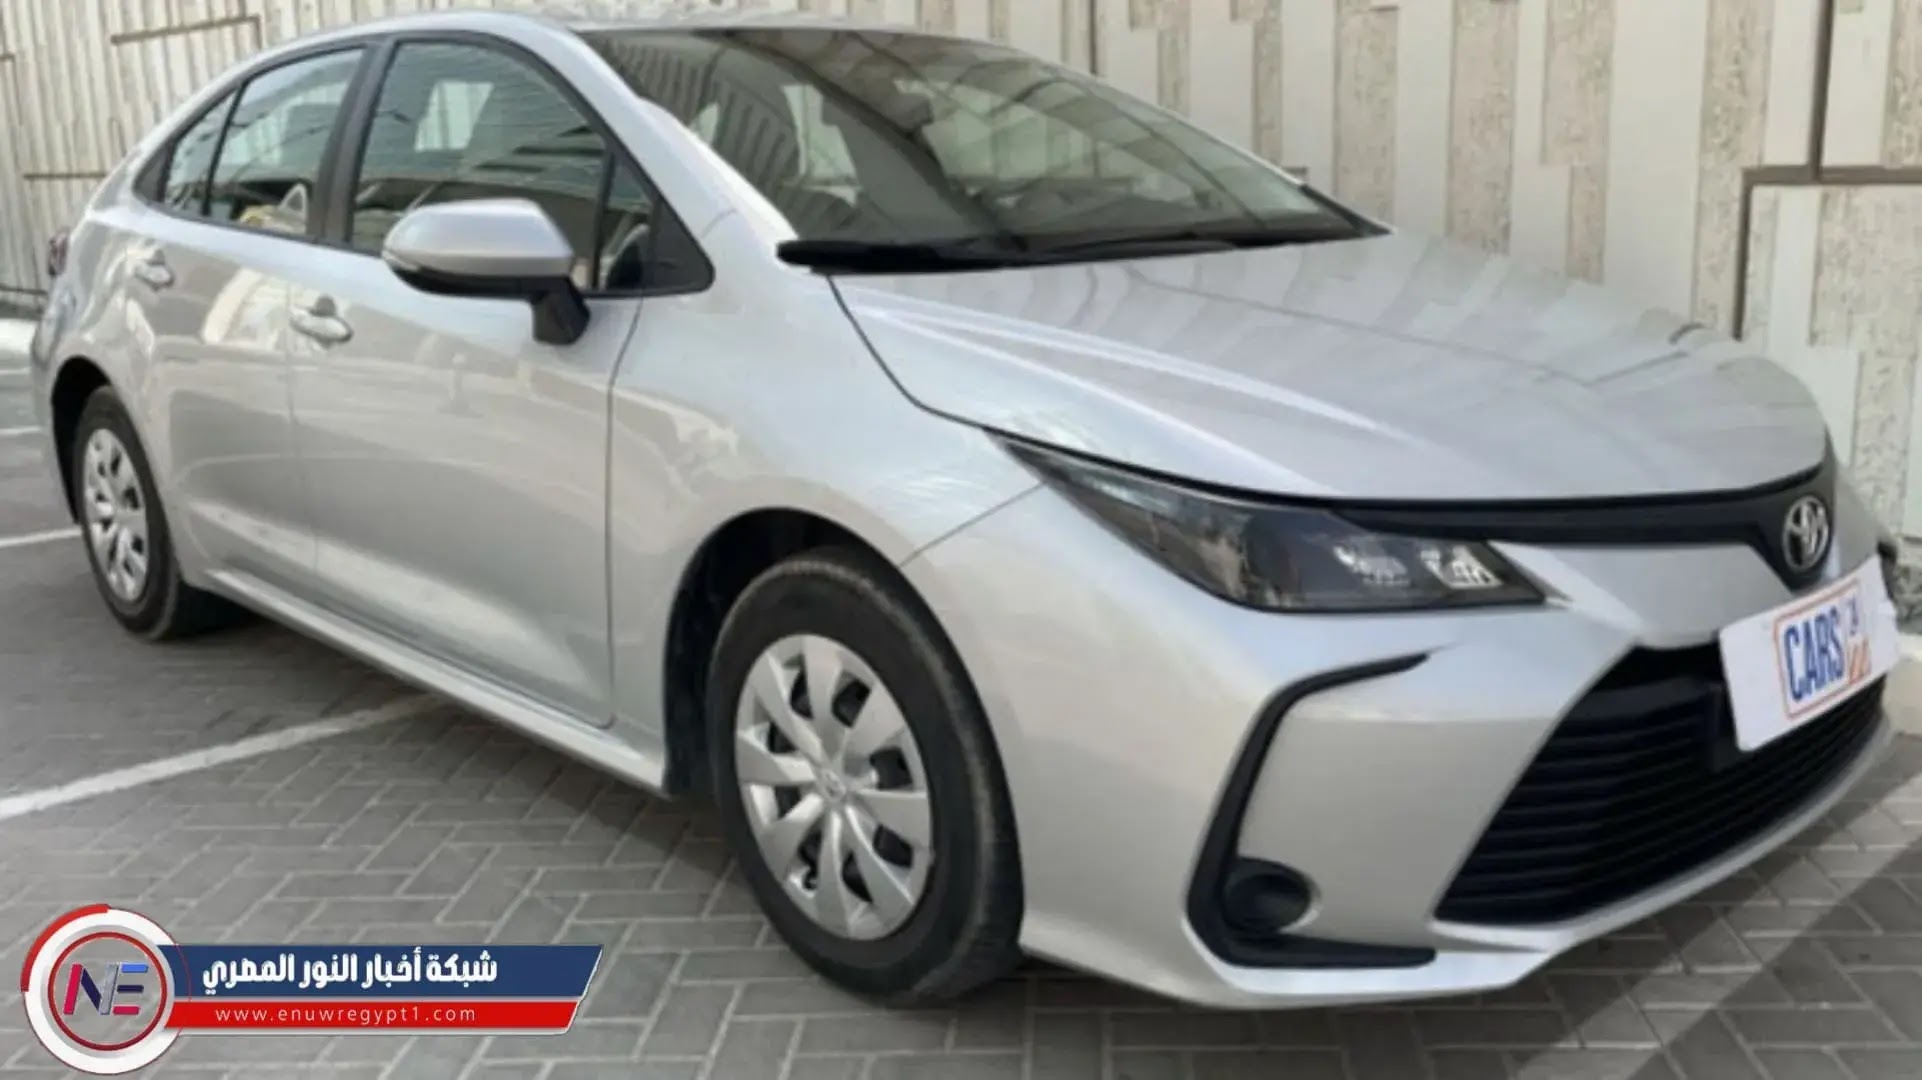 الافضل علي الاطلاق .. أفضل 5 سيارات سيدان مستعملة للشراء في الإمارات العربية المتحدة لعام 2023